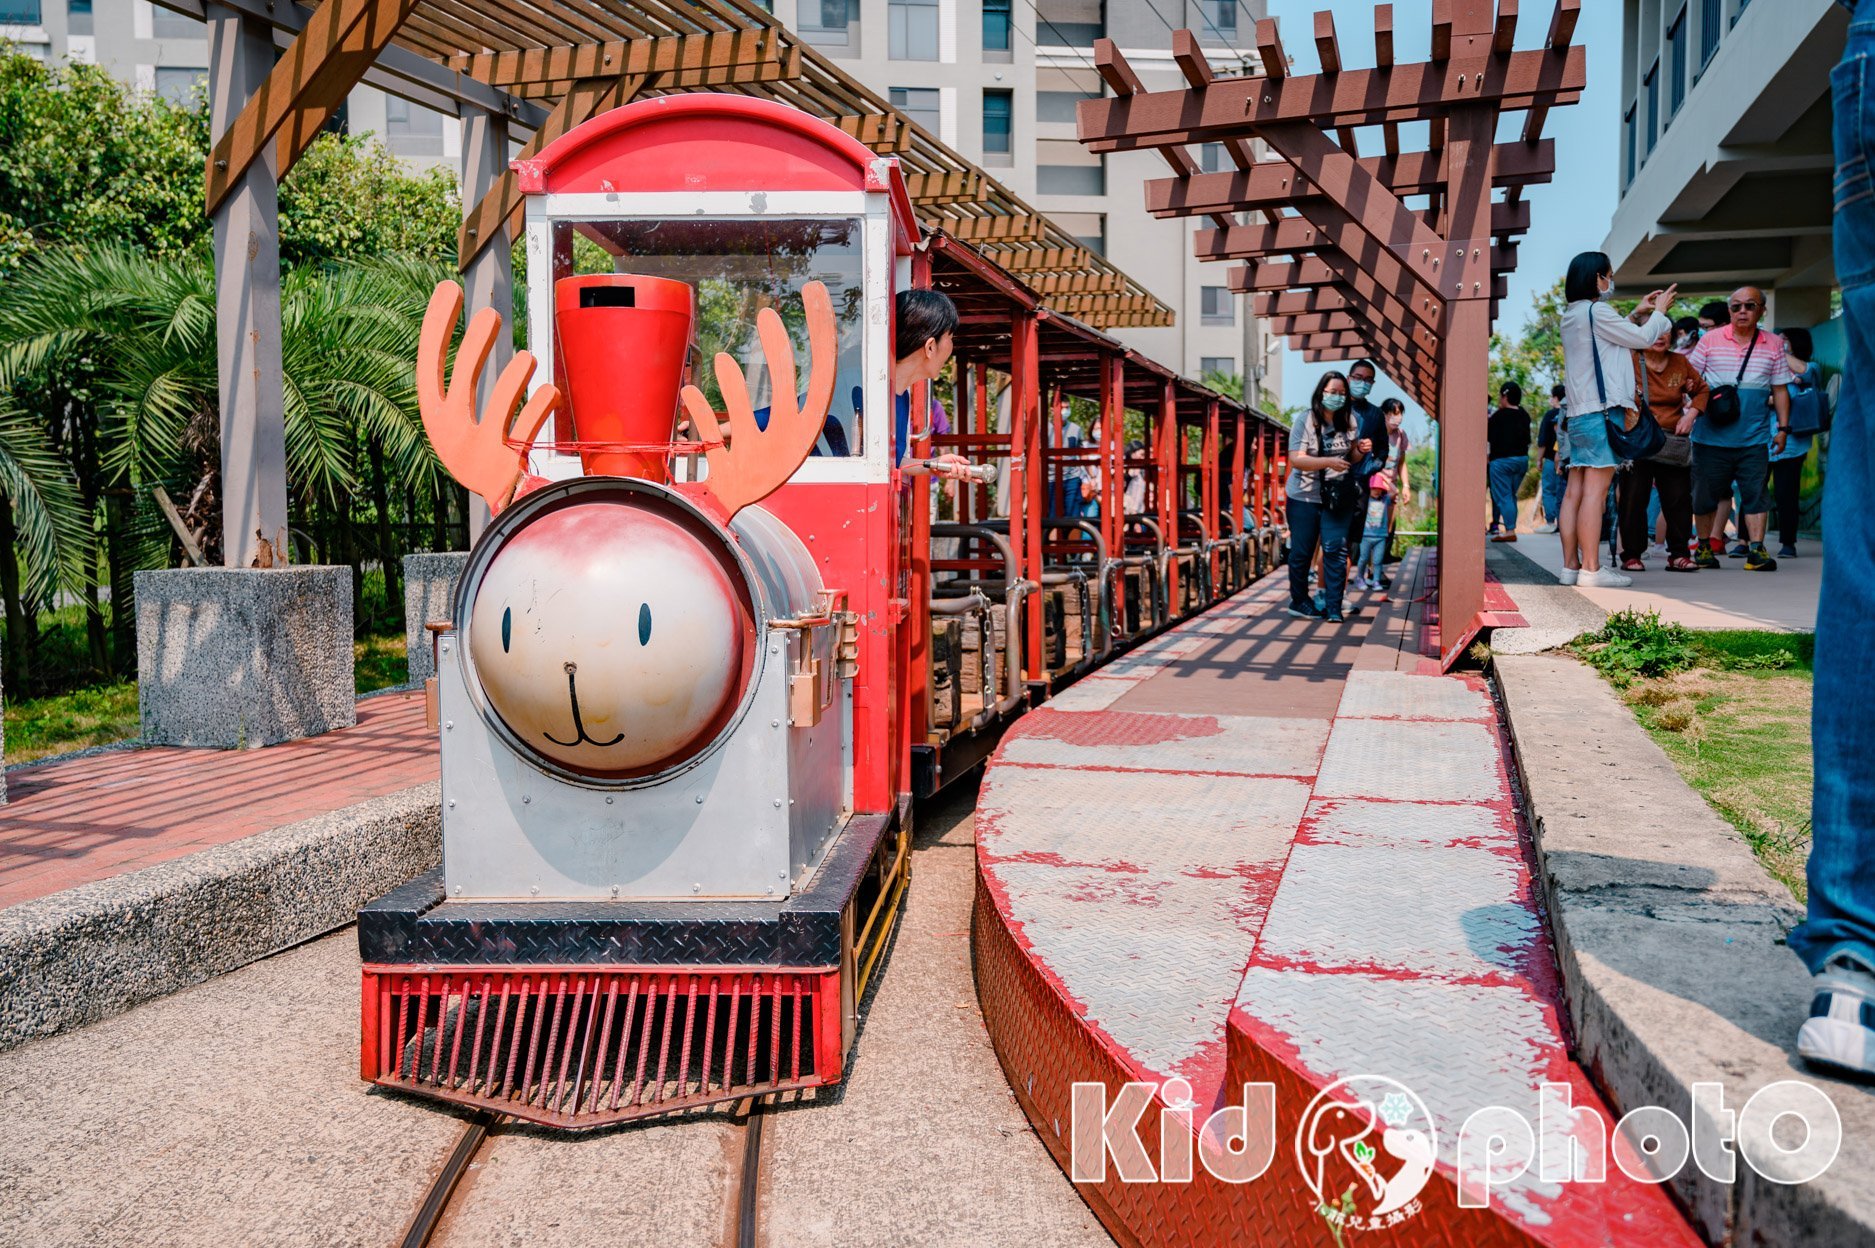 新竹市區景點〡槺榔驛〡來去搭麋鹿小火車, 小孩五十元遊槺榔, 火車迷必踩親子點, Q萌12生肖伴遊